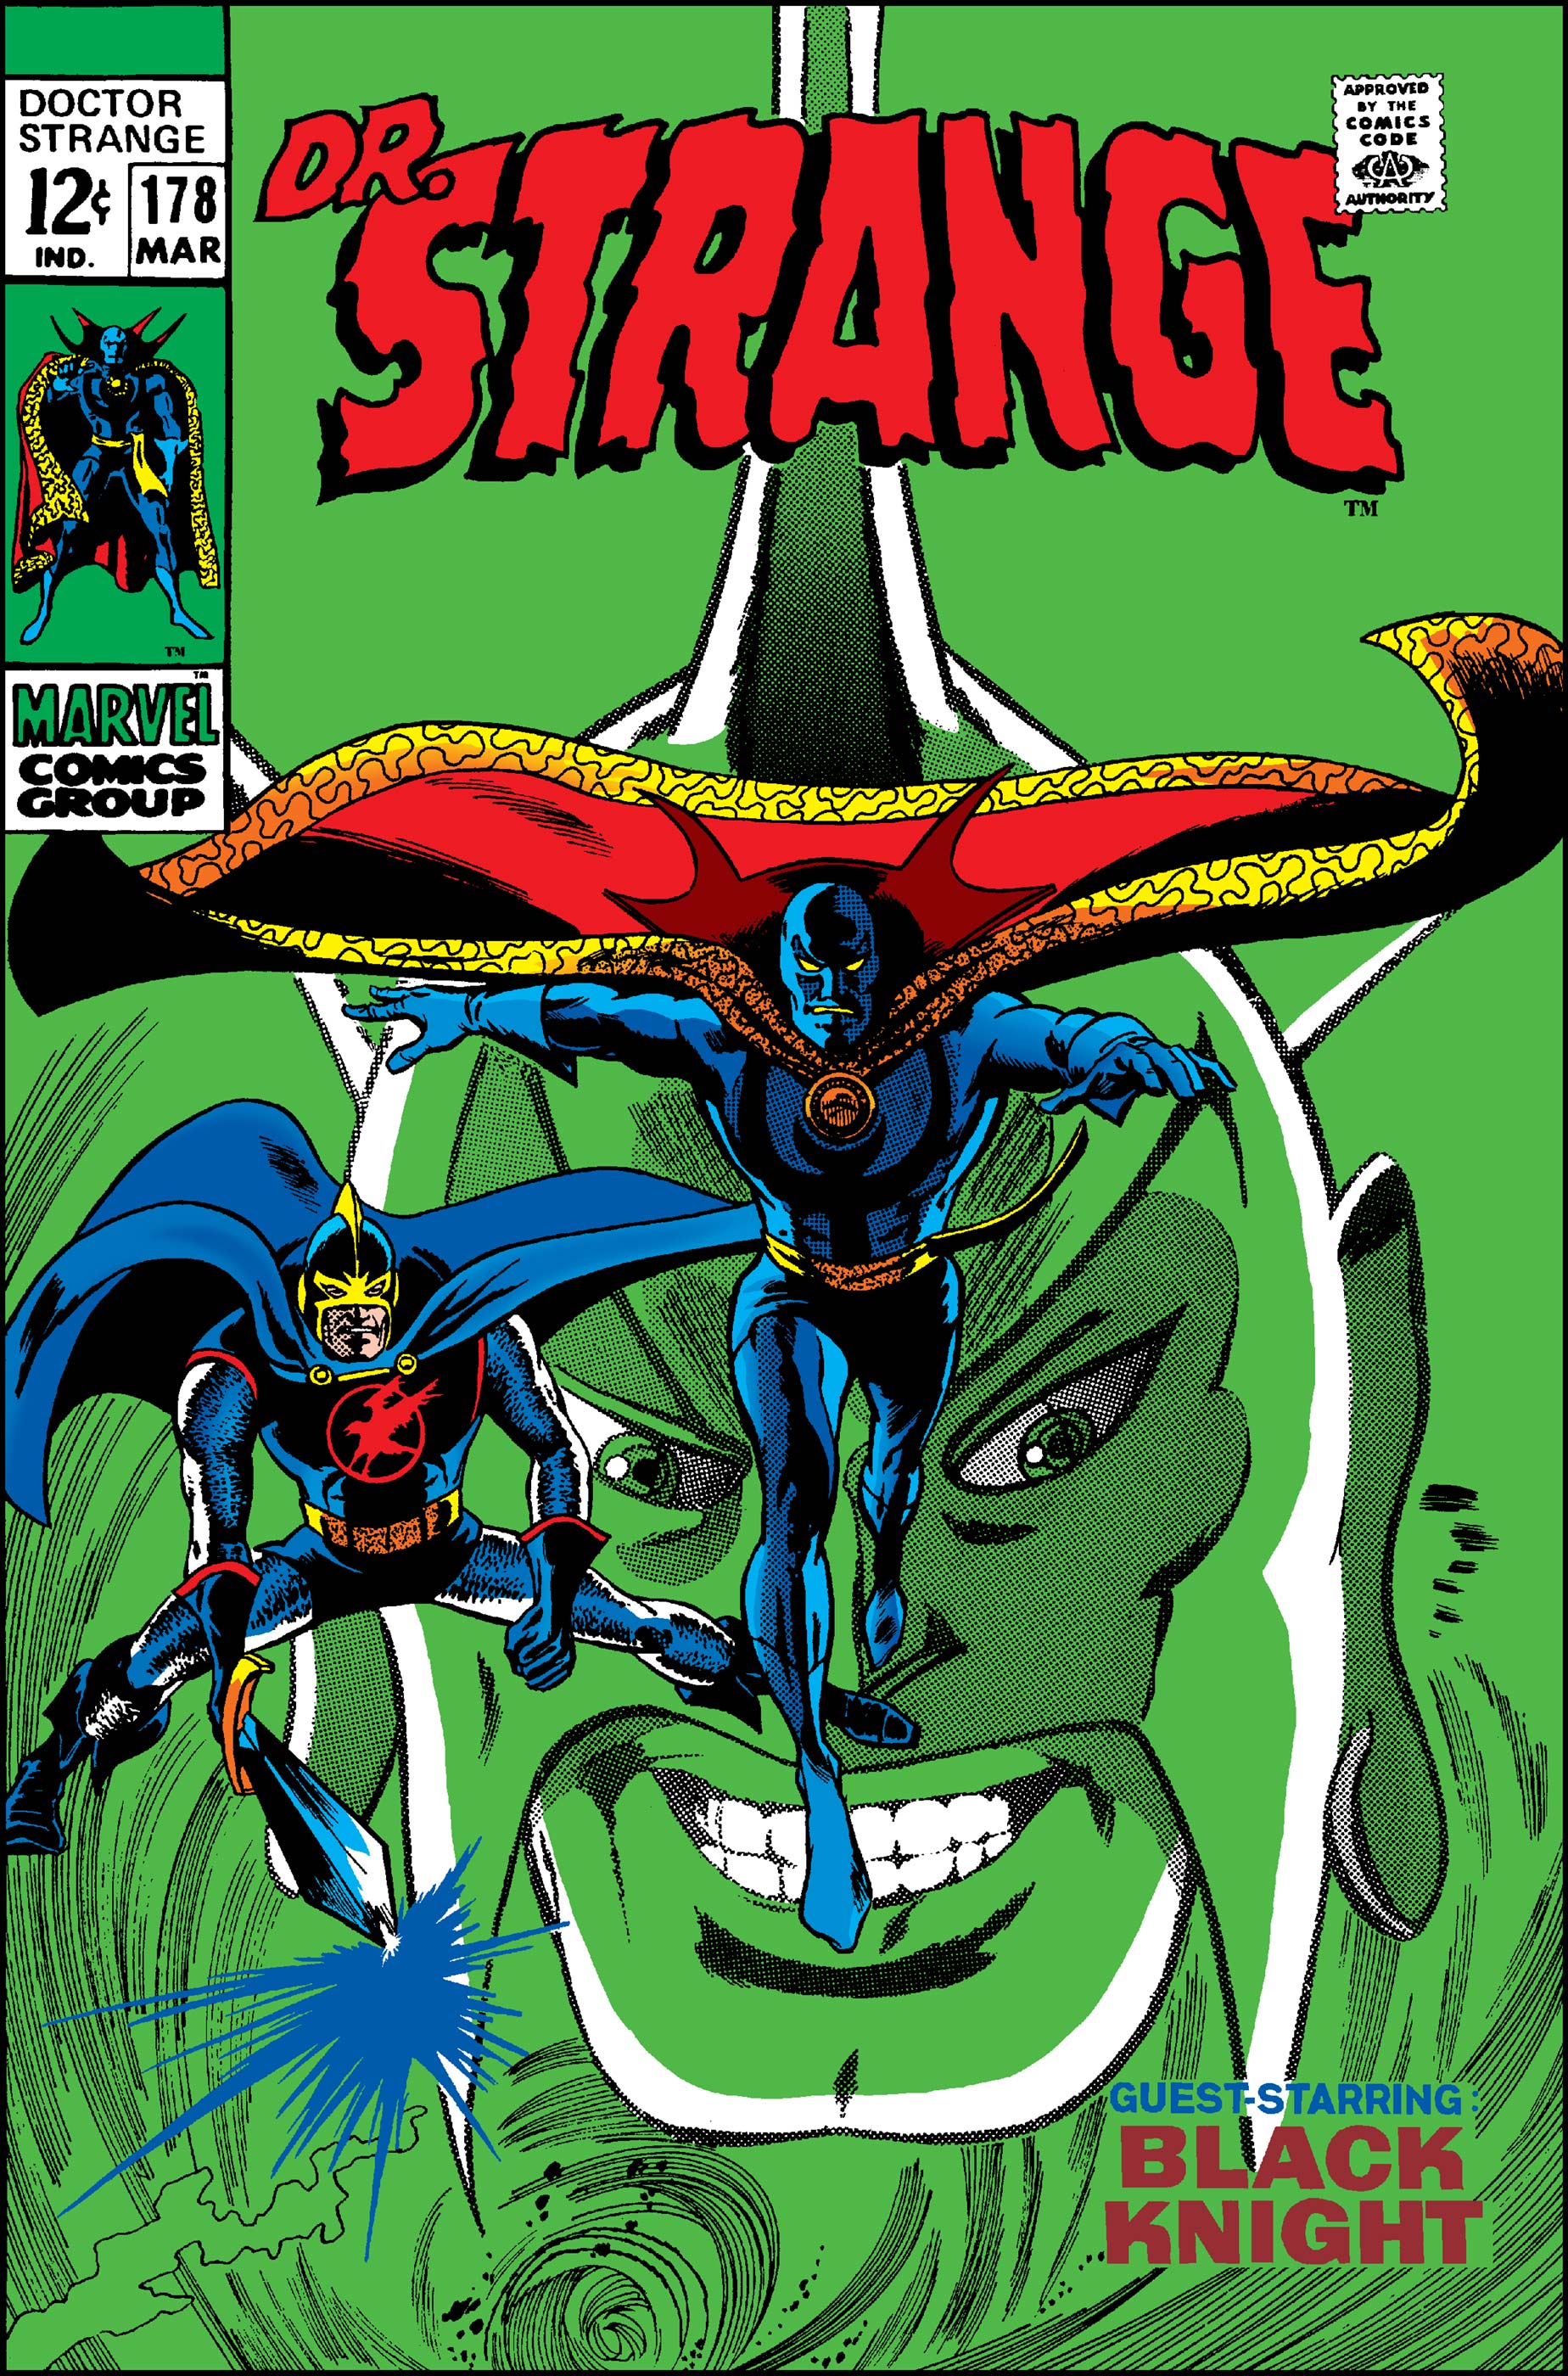 Doctor Strange (1968) #178